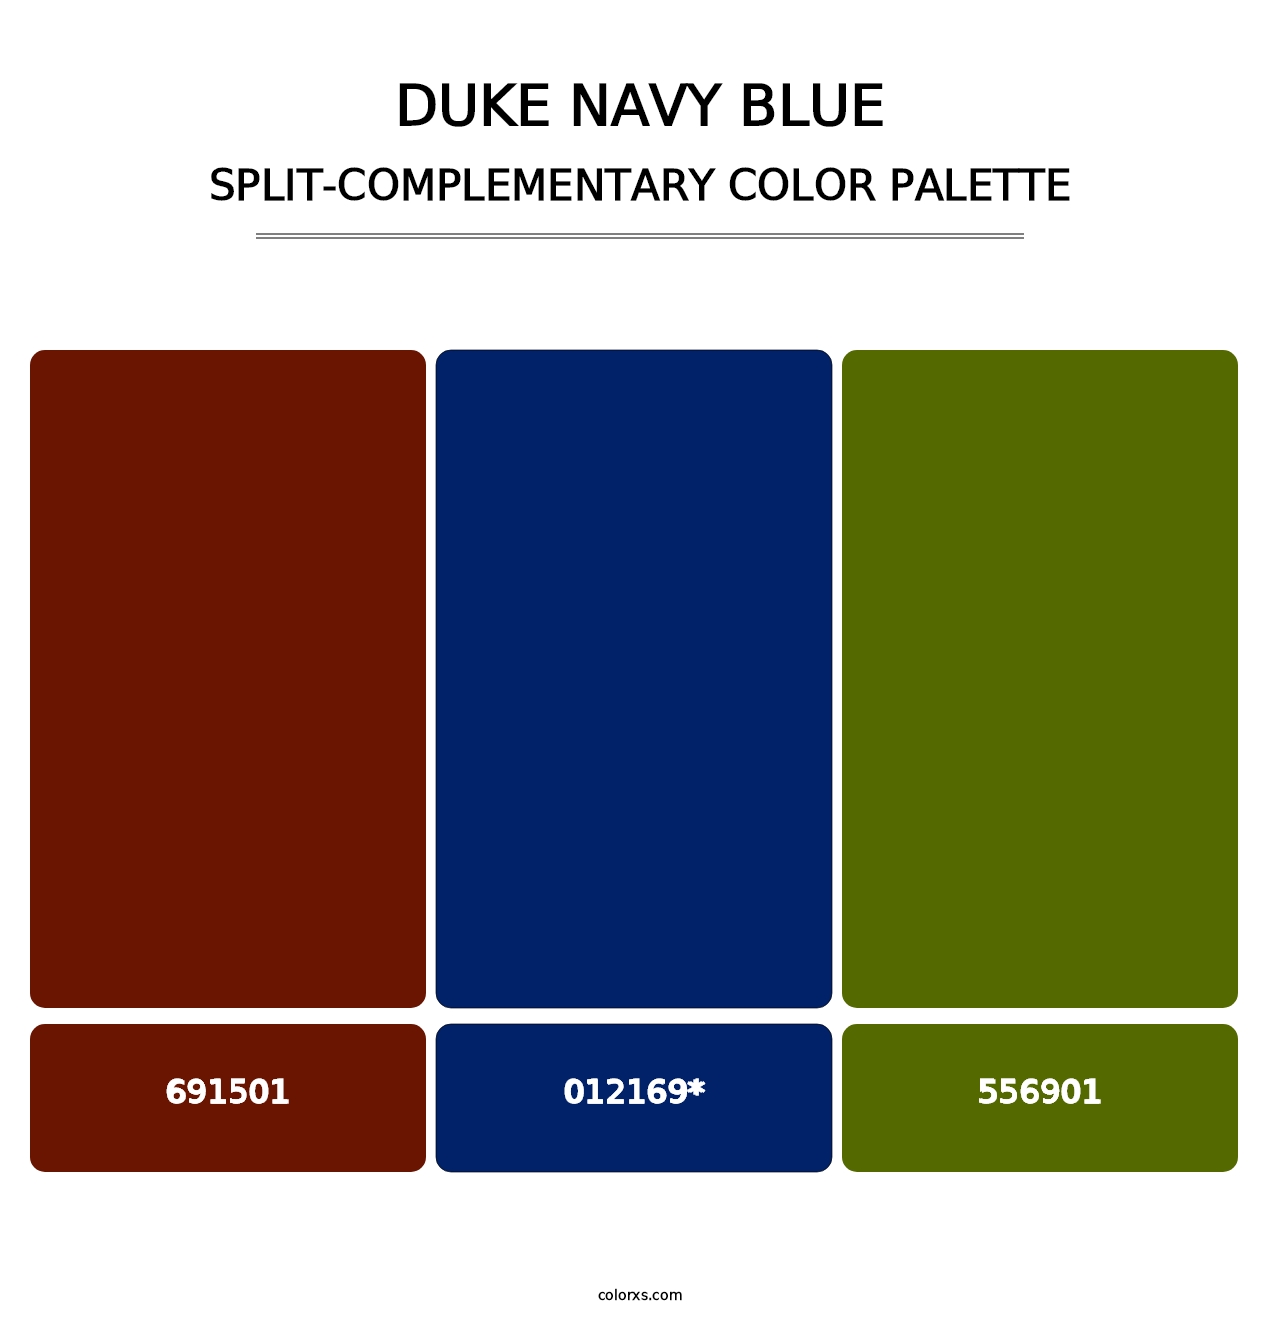 Duke Navy Blue - Split-Complementary Color Palette